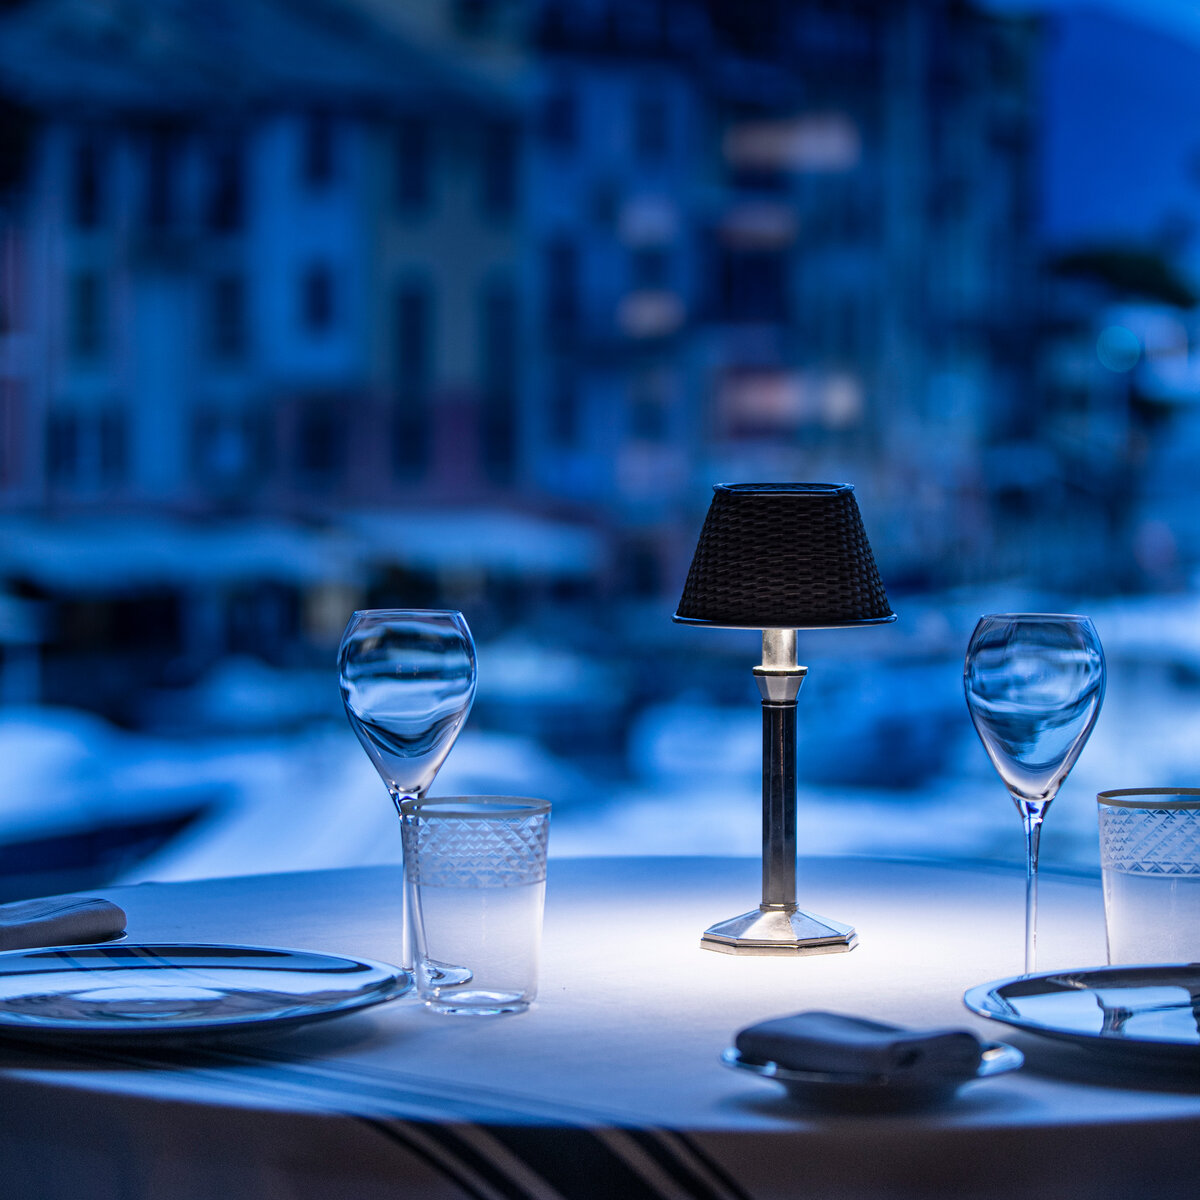 Restaurant Cracco Portofino | © Davide Groppi srl | All Rights Reserved